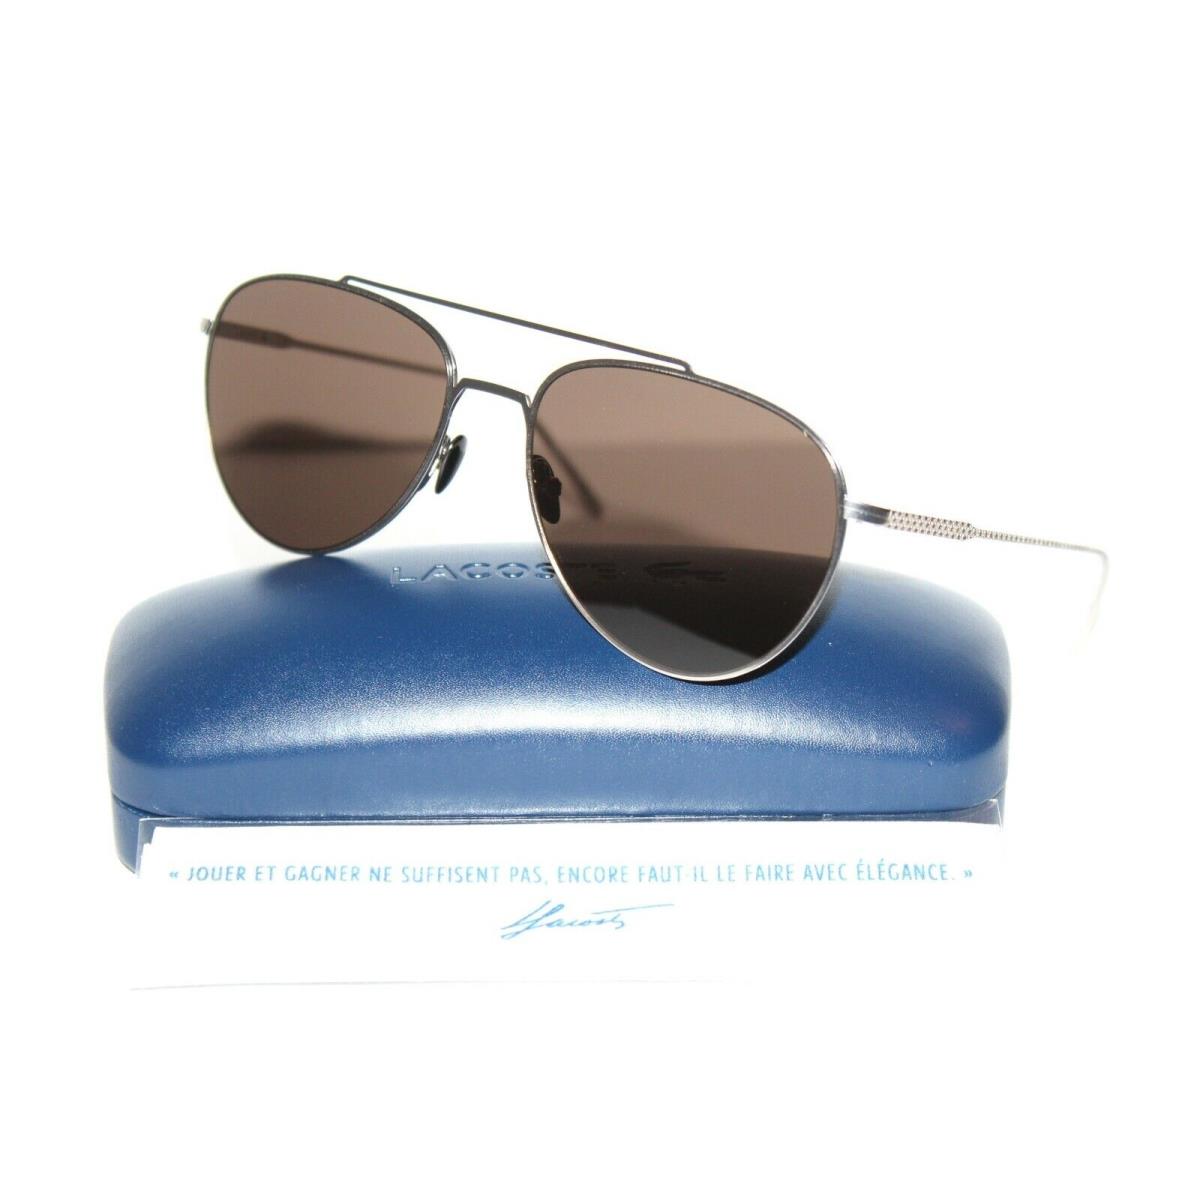 Lacoste L195S 028 Silver Brown Aviator Sunglasses 56-17-140 W/case